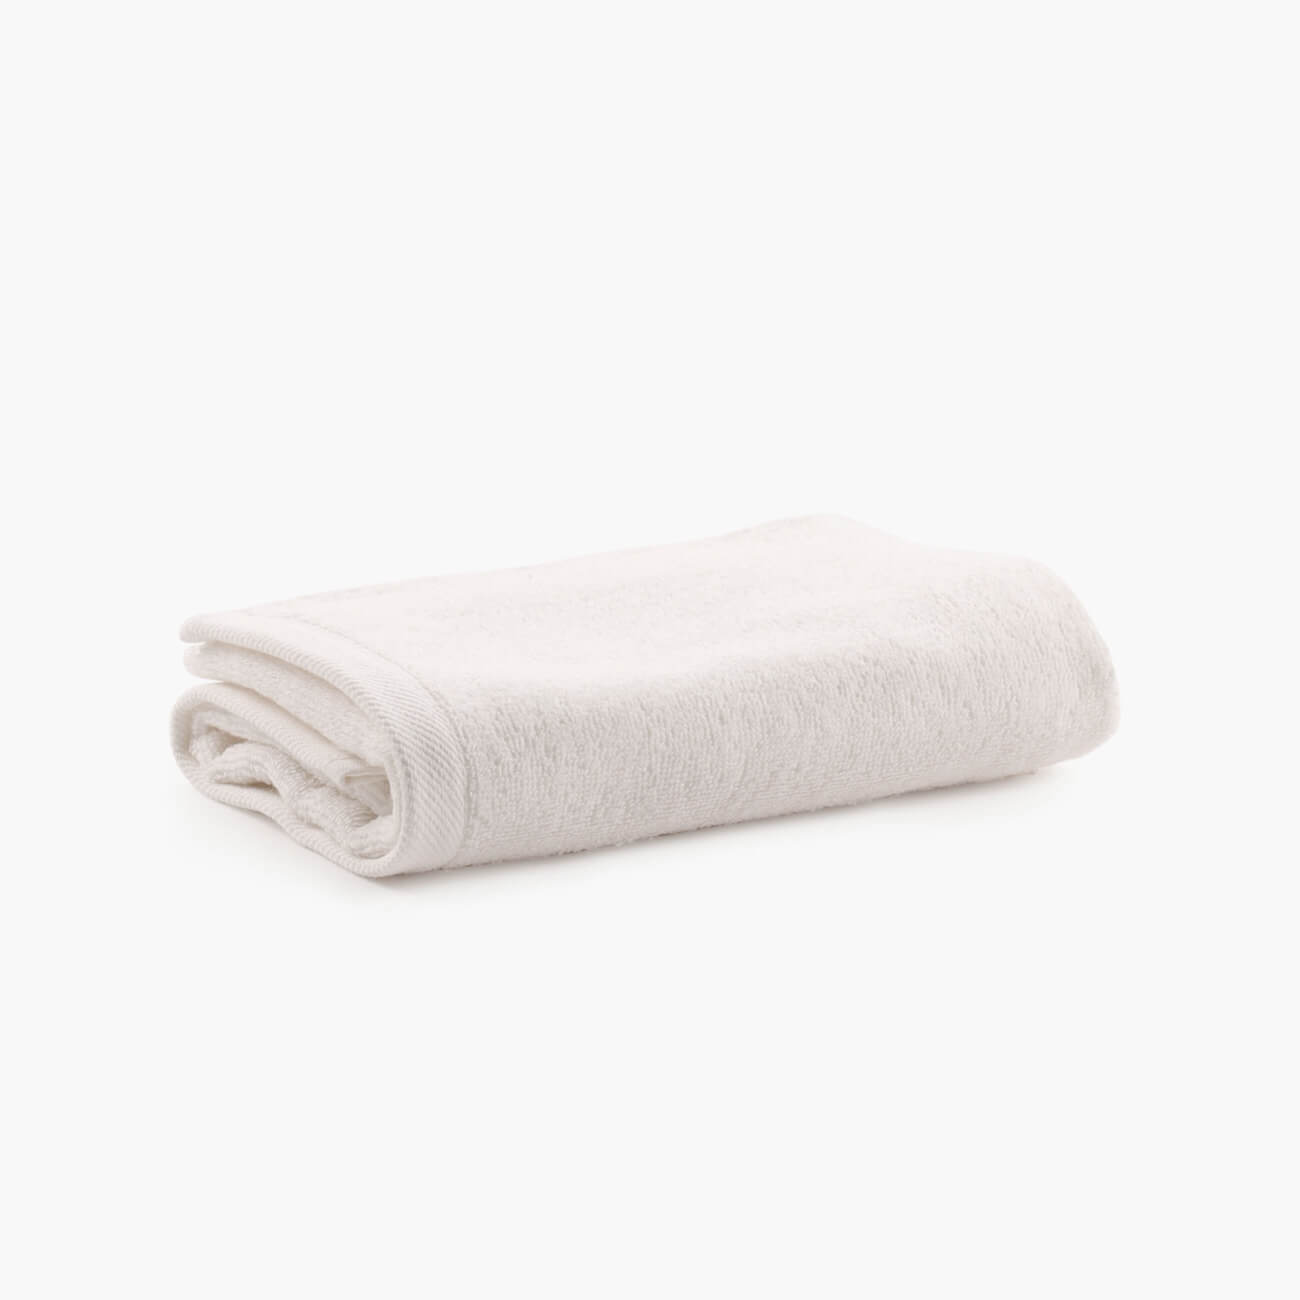 Полотенце, 40х60 см, хлопок, молочное, Wellness набор для полотенце уголок рукавица